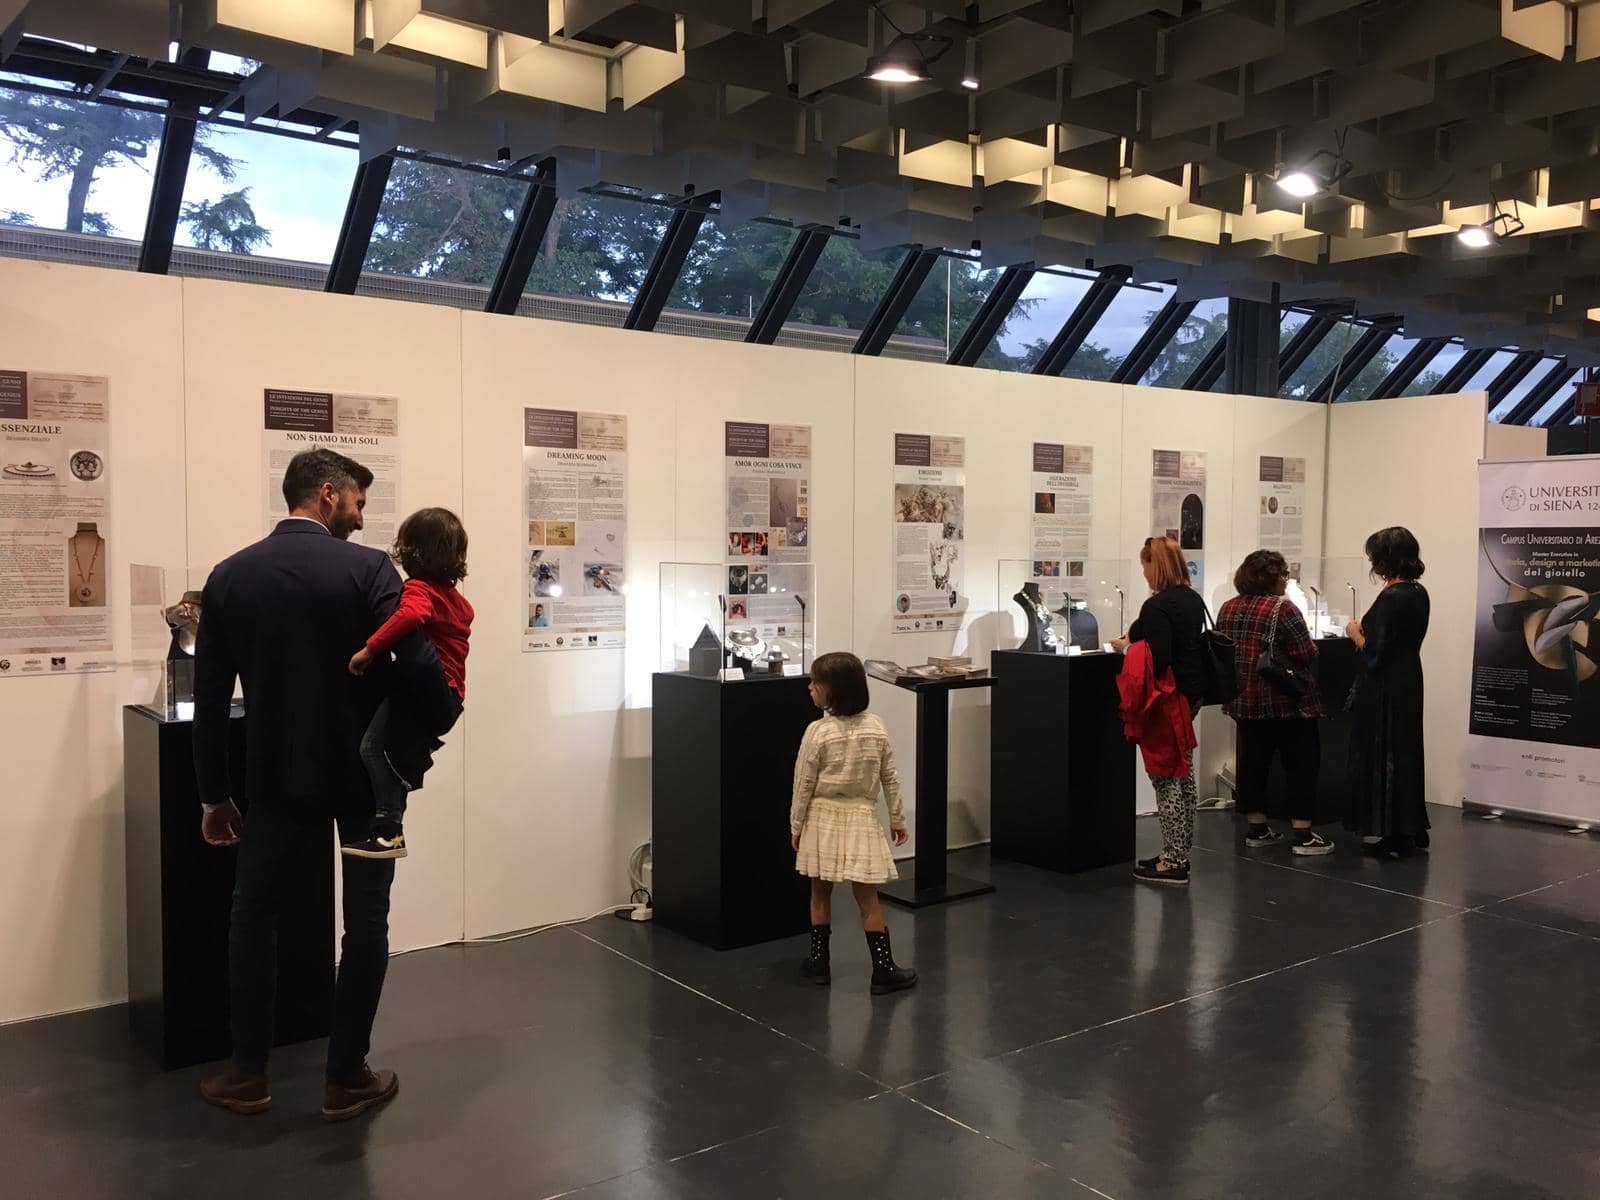 In mostra alla Biennale d’arte contemporanea di Firenze i lavori realizzati dagli allievi del master in Storia, design e marketing del gioiello dell’Università di Siena ispirati quest’anno a Leonardo